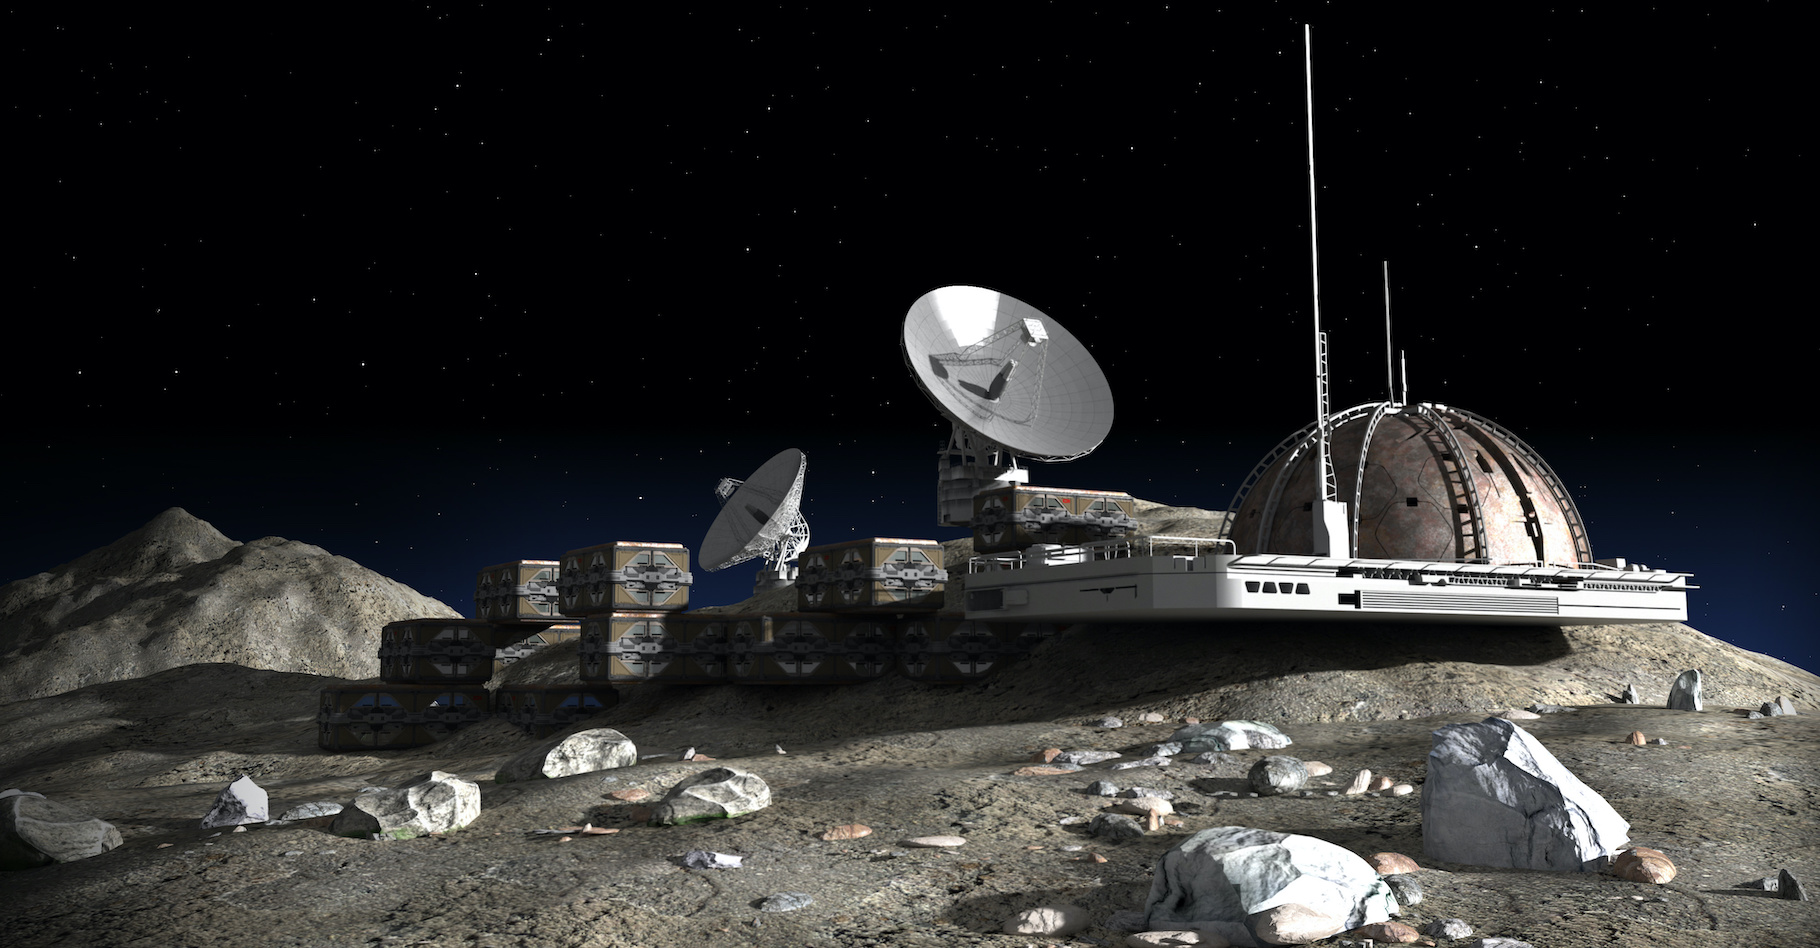 La construction des futures bases lunaires reposera-t-elle sur l’urine des astronautes ? C’est ce qu’imaginent des chercheurs. © 3000ad, Adobe Stock